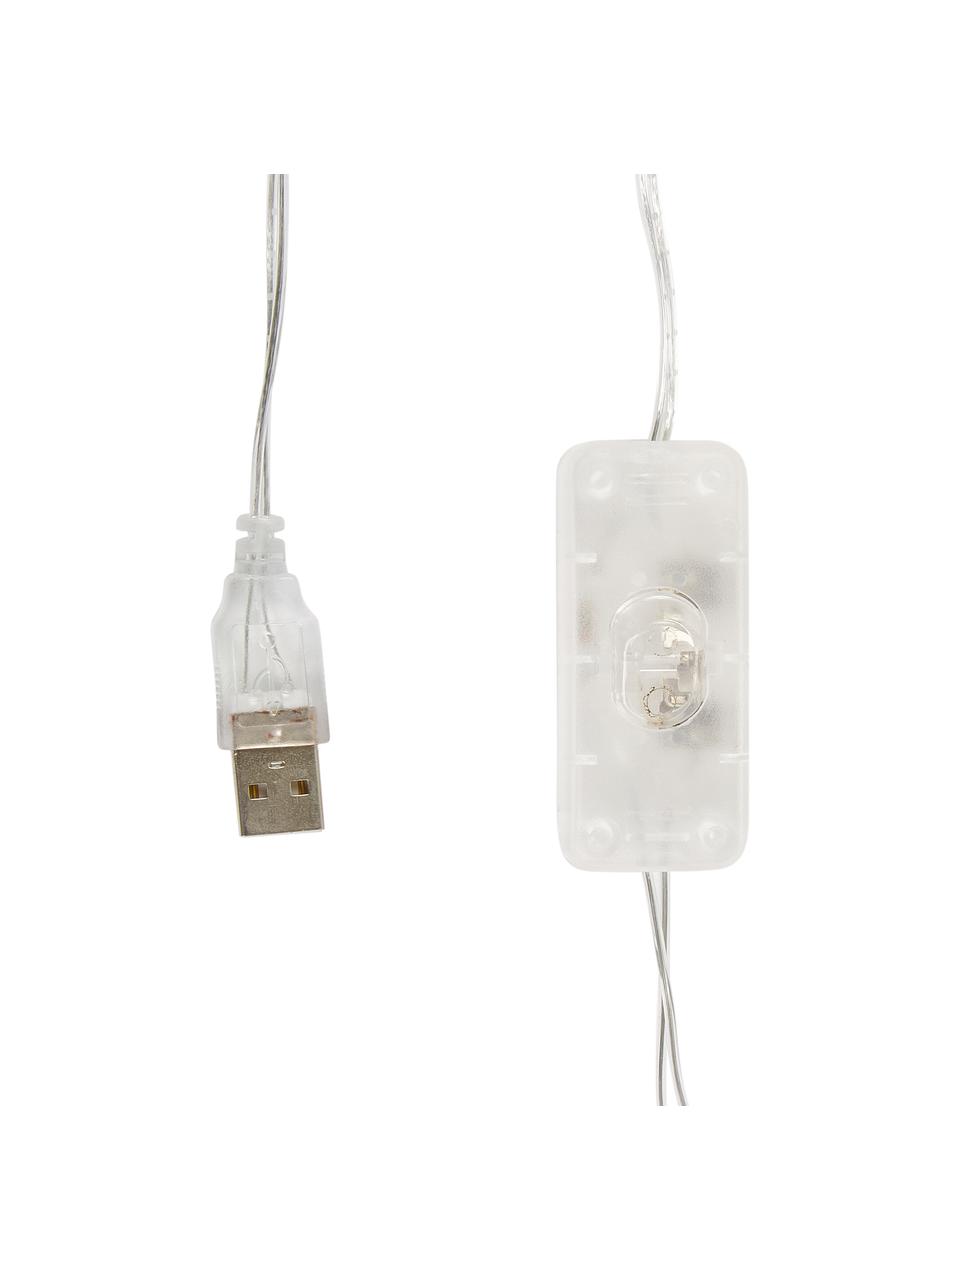 Guirnalda de luces LED Colorain, 378 cm, 20 luces, Linternas: poliéster con certificado, Cable: plástico con certificado , Blanco, crema, beige, mostaza, L 378 cm